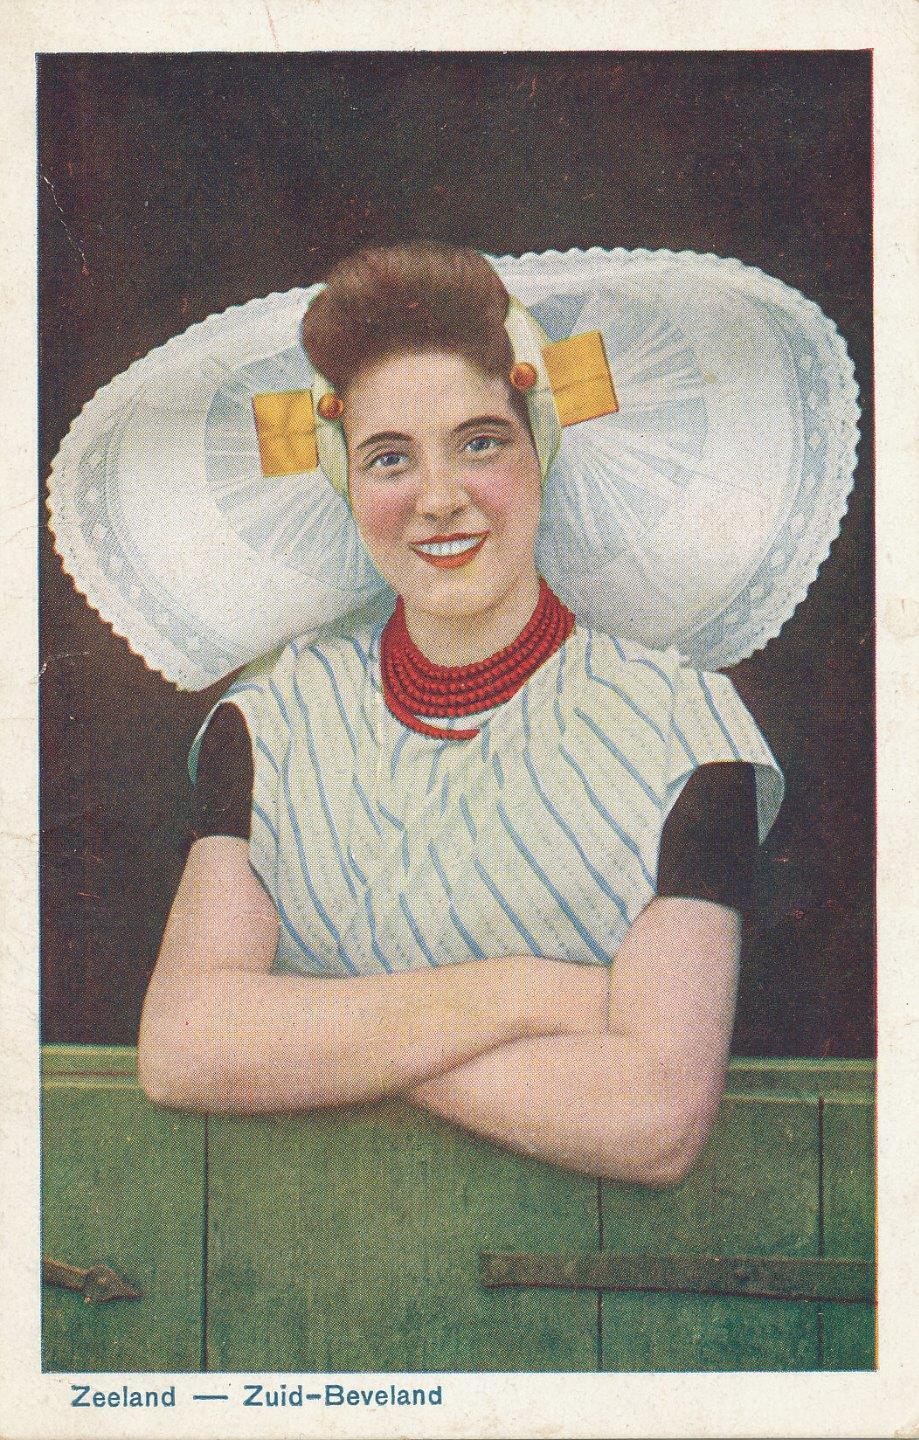 1926 Netherlands fashion Zeeland - Zuid-Beveland